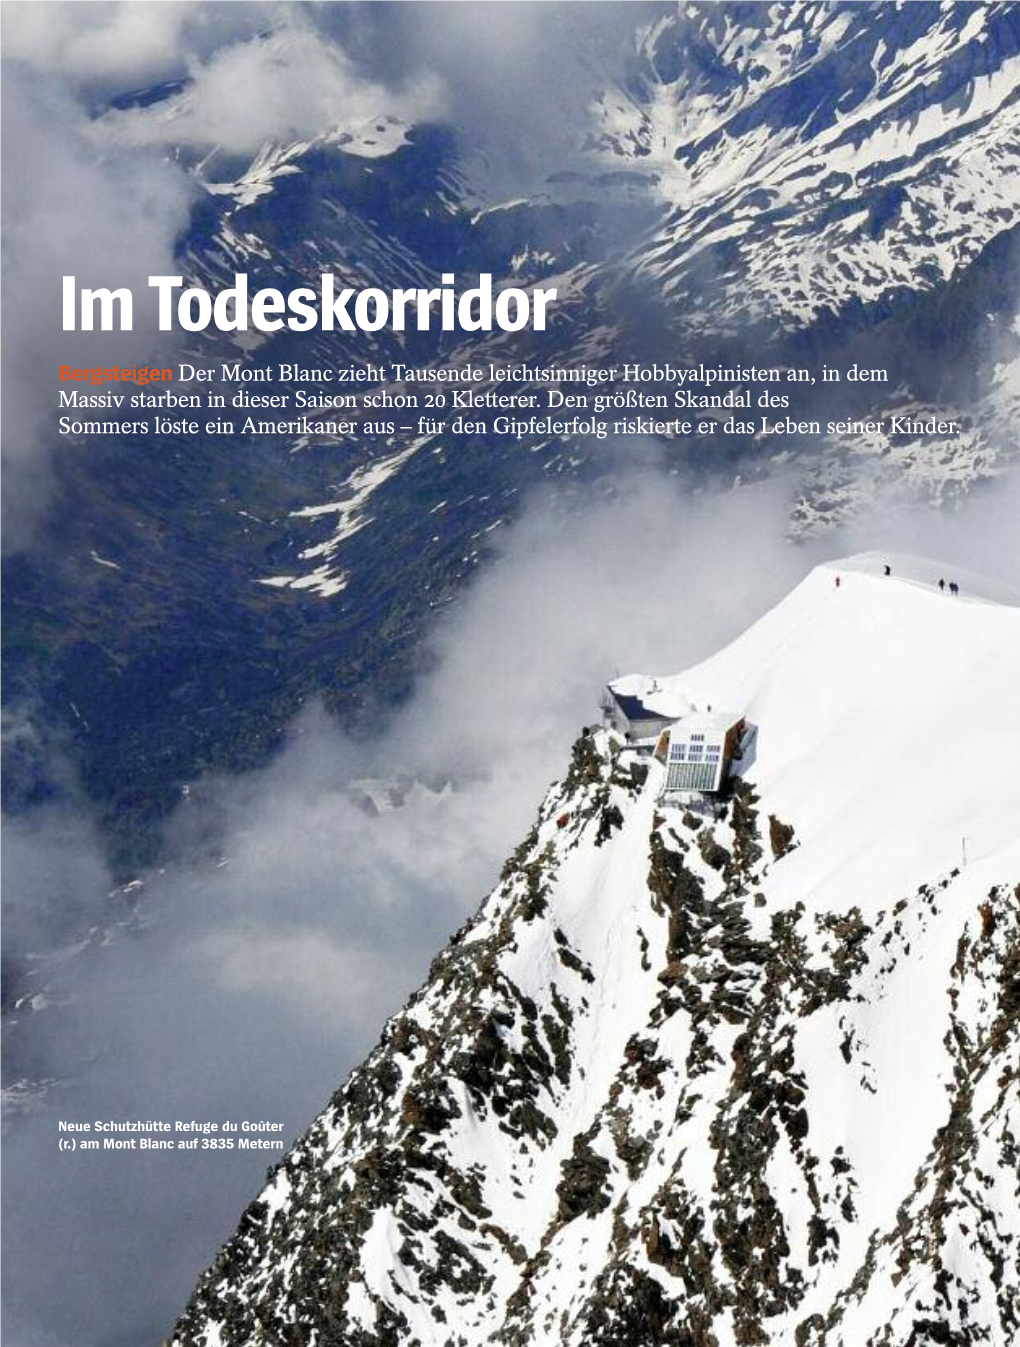 Im Todeskorridor Bergsteigen Der Mont Blanc Zieht Tausende Leichtsinniger Hobbyalpinisten An, in Dem Massiv Starben in Dieser Saison Schon 20 Kletterer